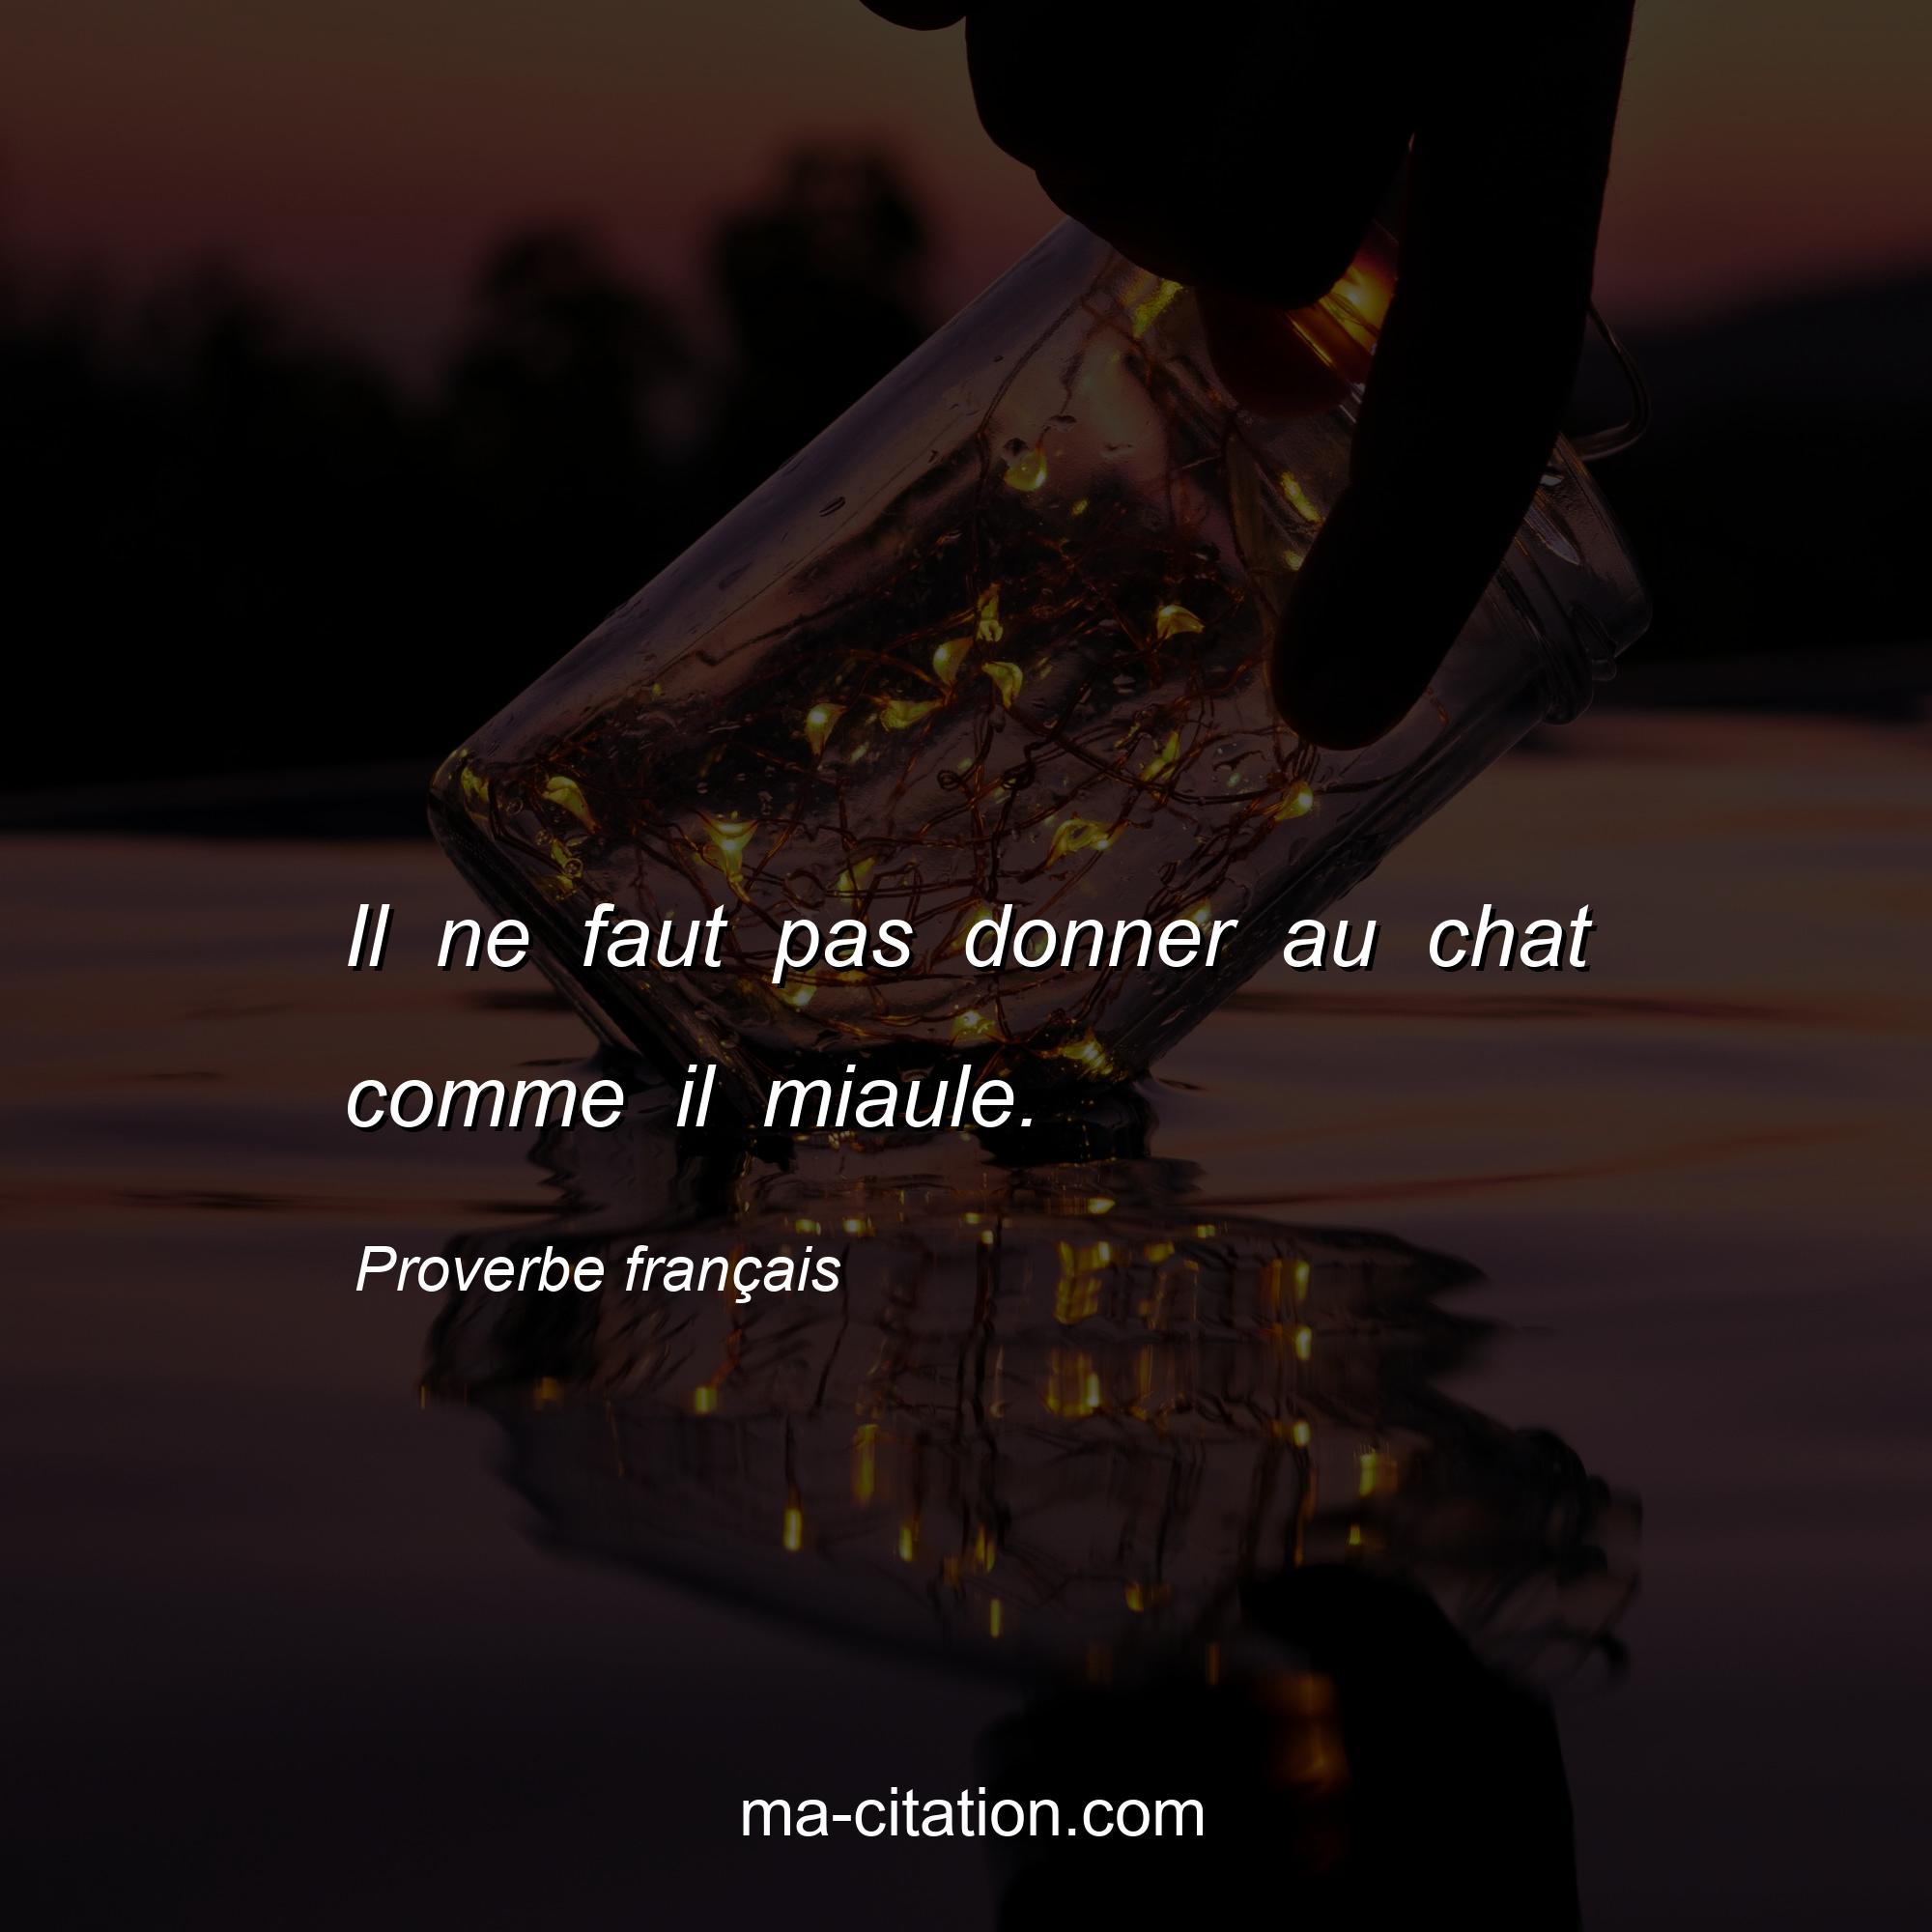 Proverbe français : Il ne faut pas donner au chat comme il miaule.